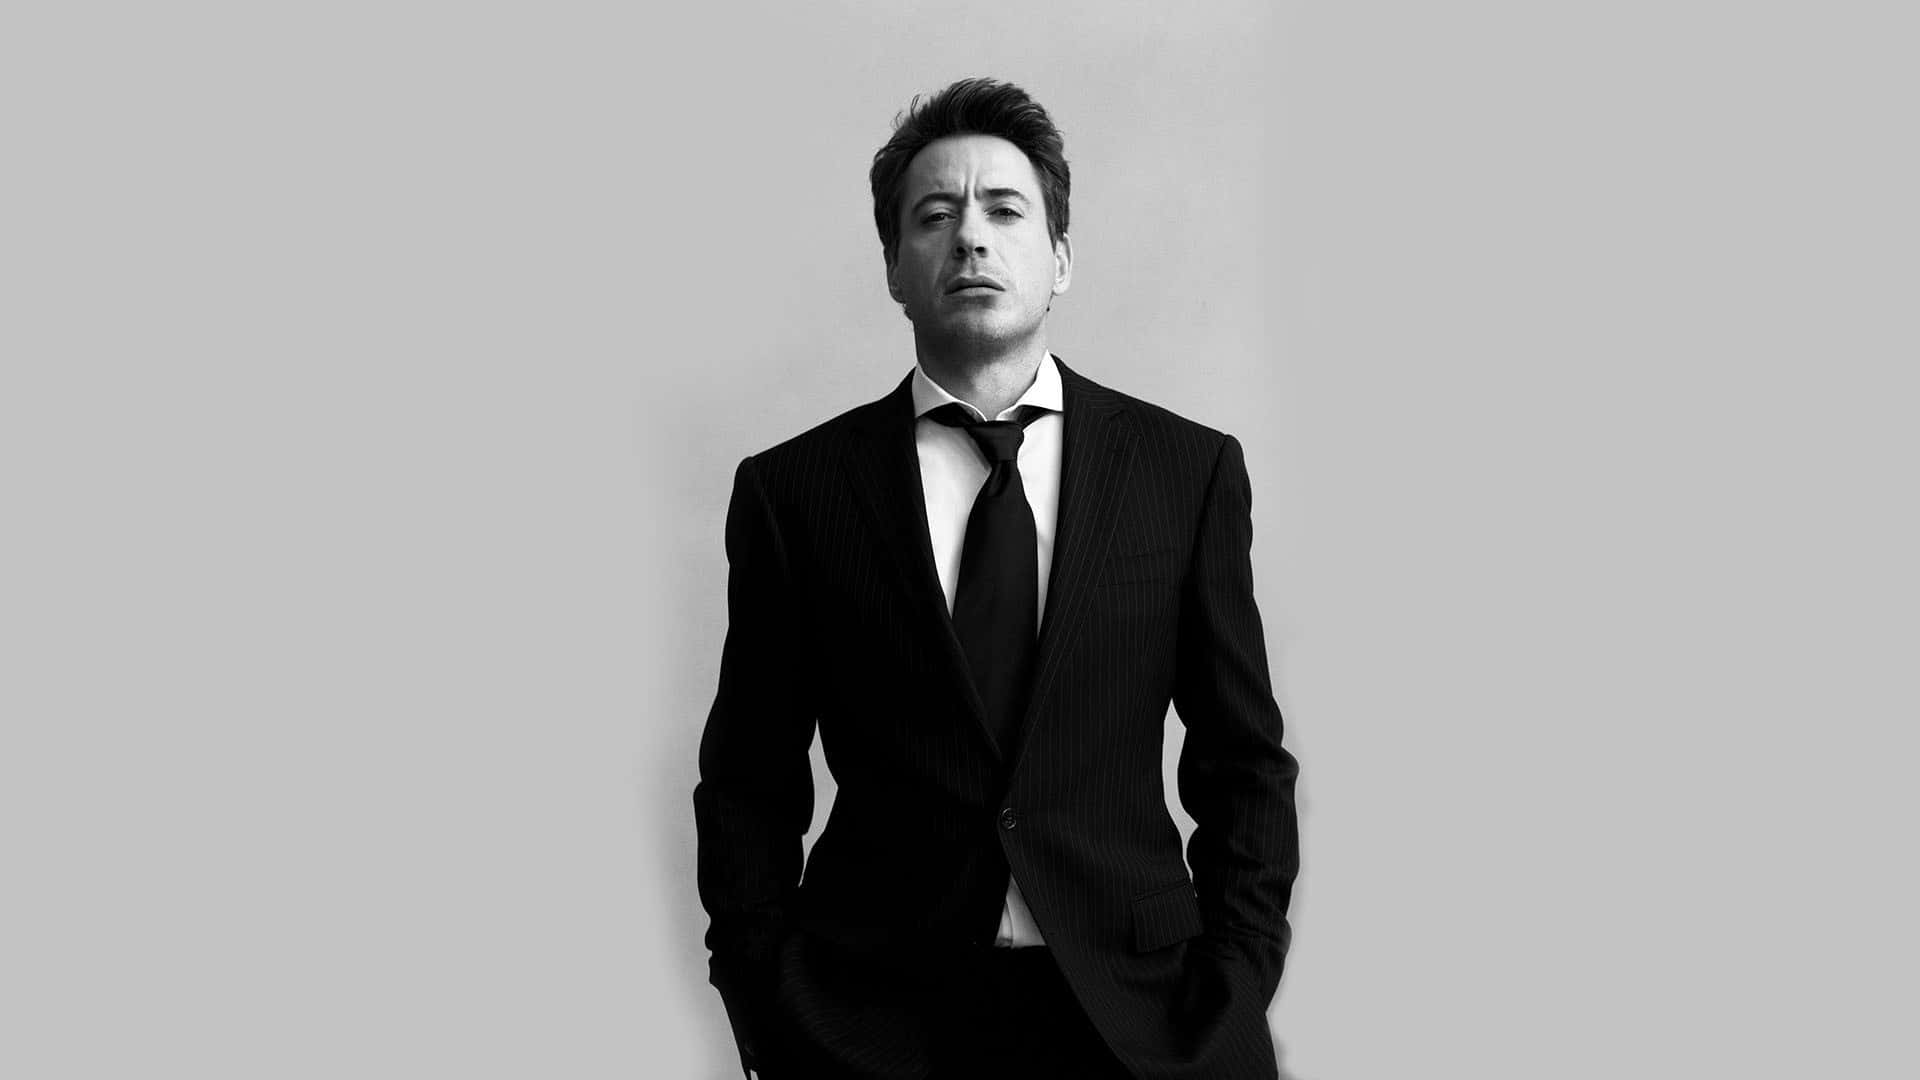 Man In Suit Robert Downey Jr Wallpaper